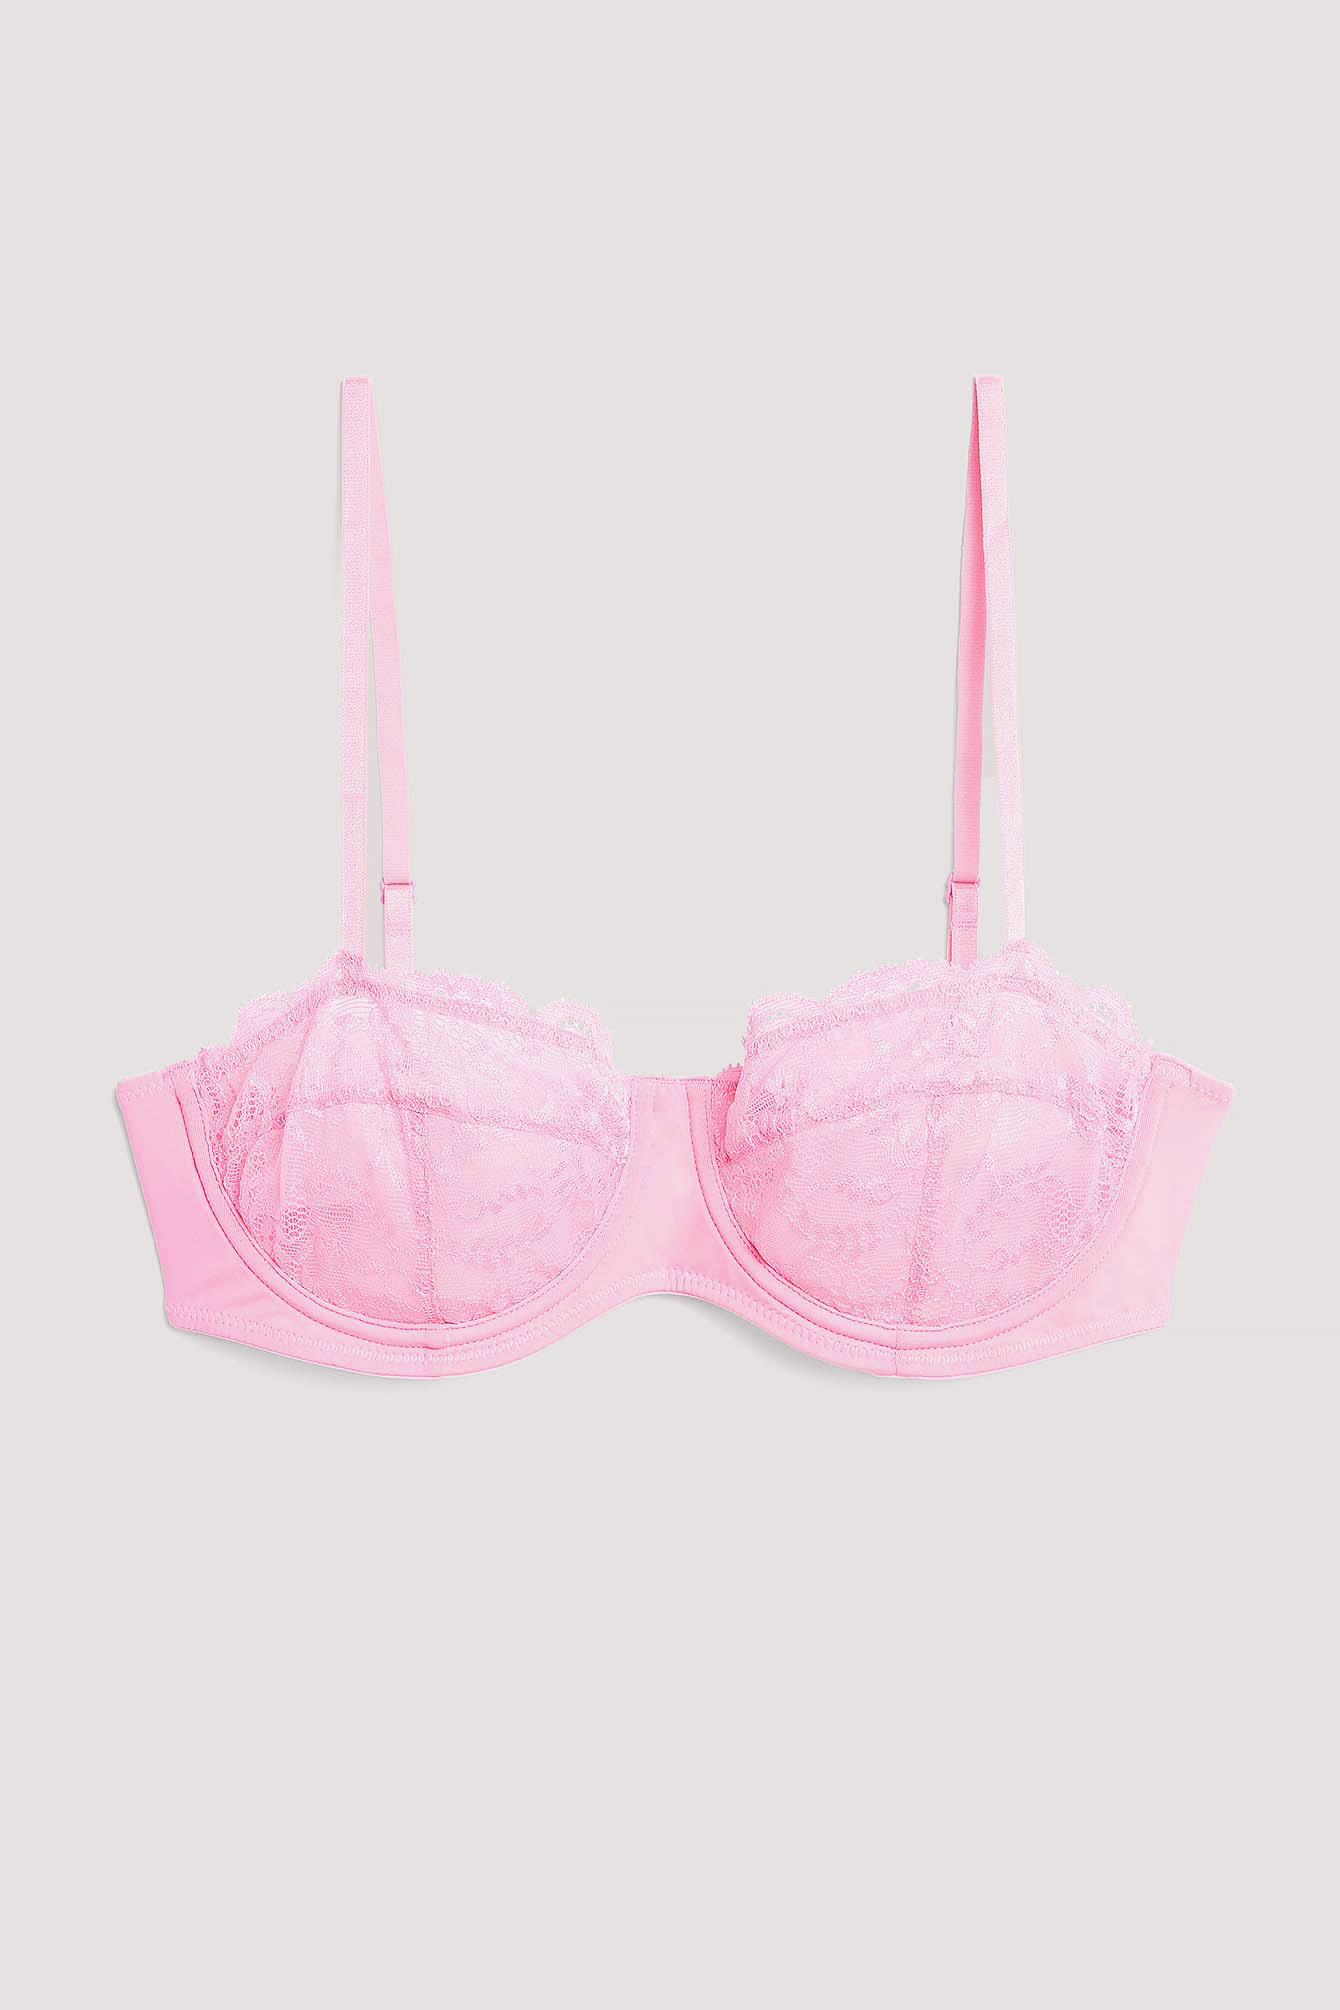 PINK Victoria's Secret, Intimates & Sleepwear, Victorias Secret Pink  Lurex Velvet Triangle Bra